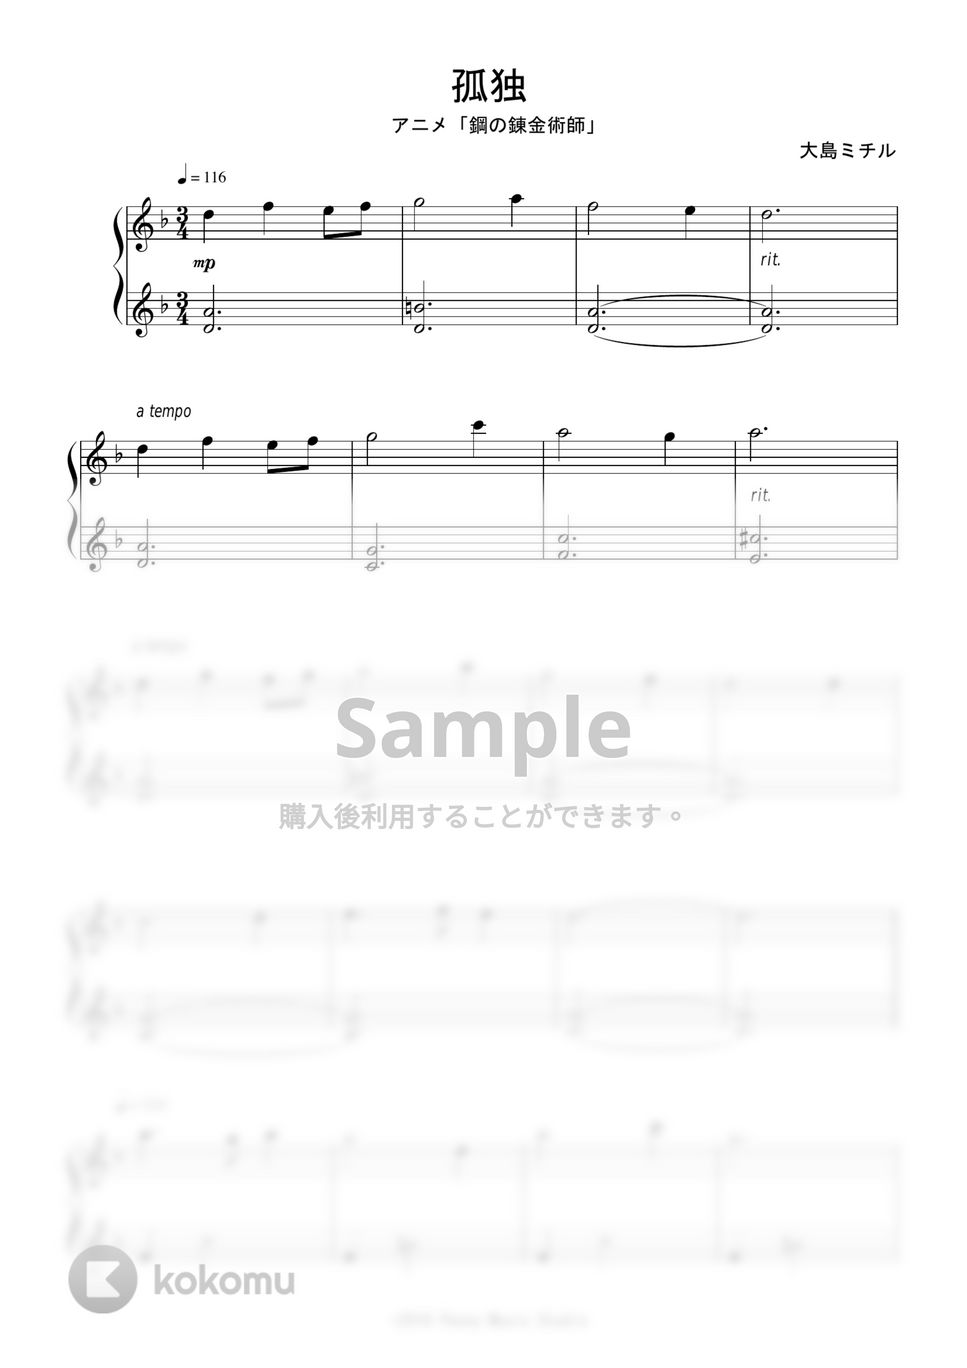 アニメ『鋼の錬金術師』OST - 孤独 (完コピ) by Peony